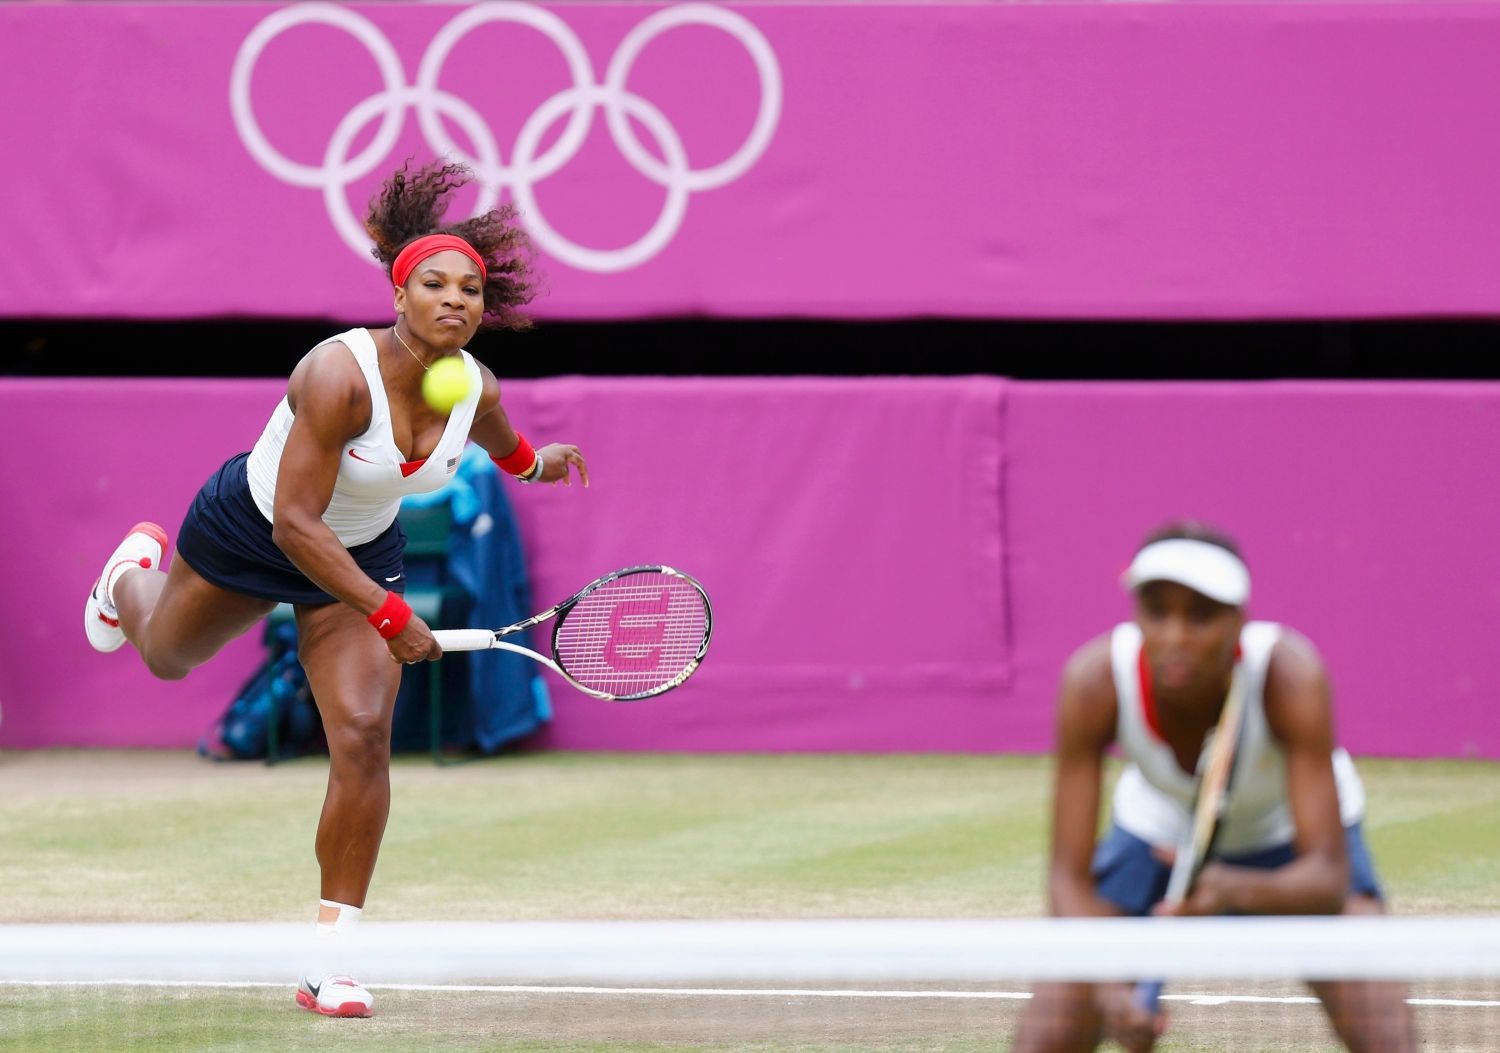 Americké tenistky Serena (vzadu) a Venus Williamsovy v utkání s Češkami Lucií Hradeckou a Andreou Hlaváčkovou ve finále OH 2012 v Londýně.